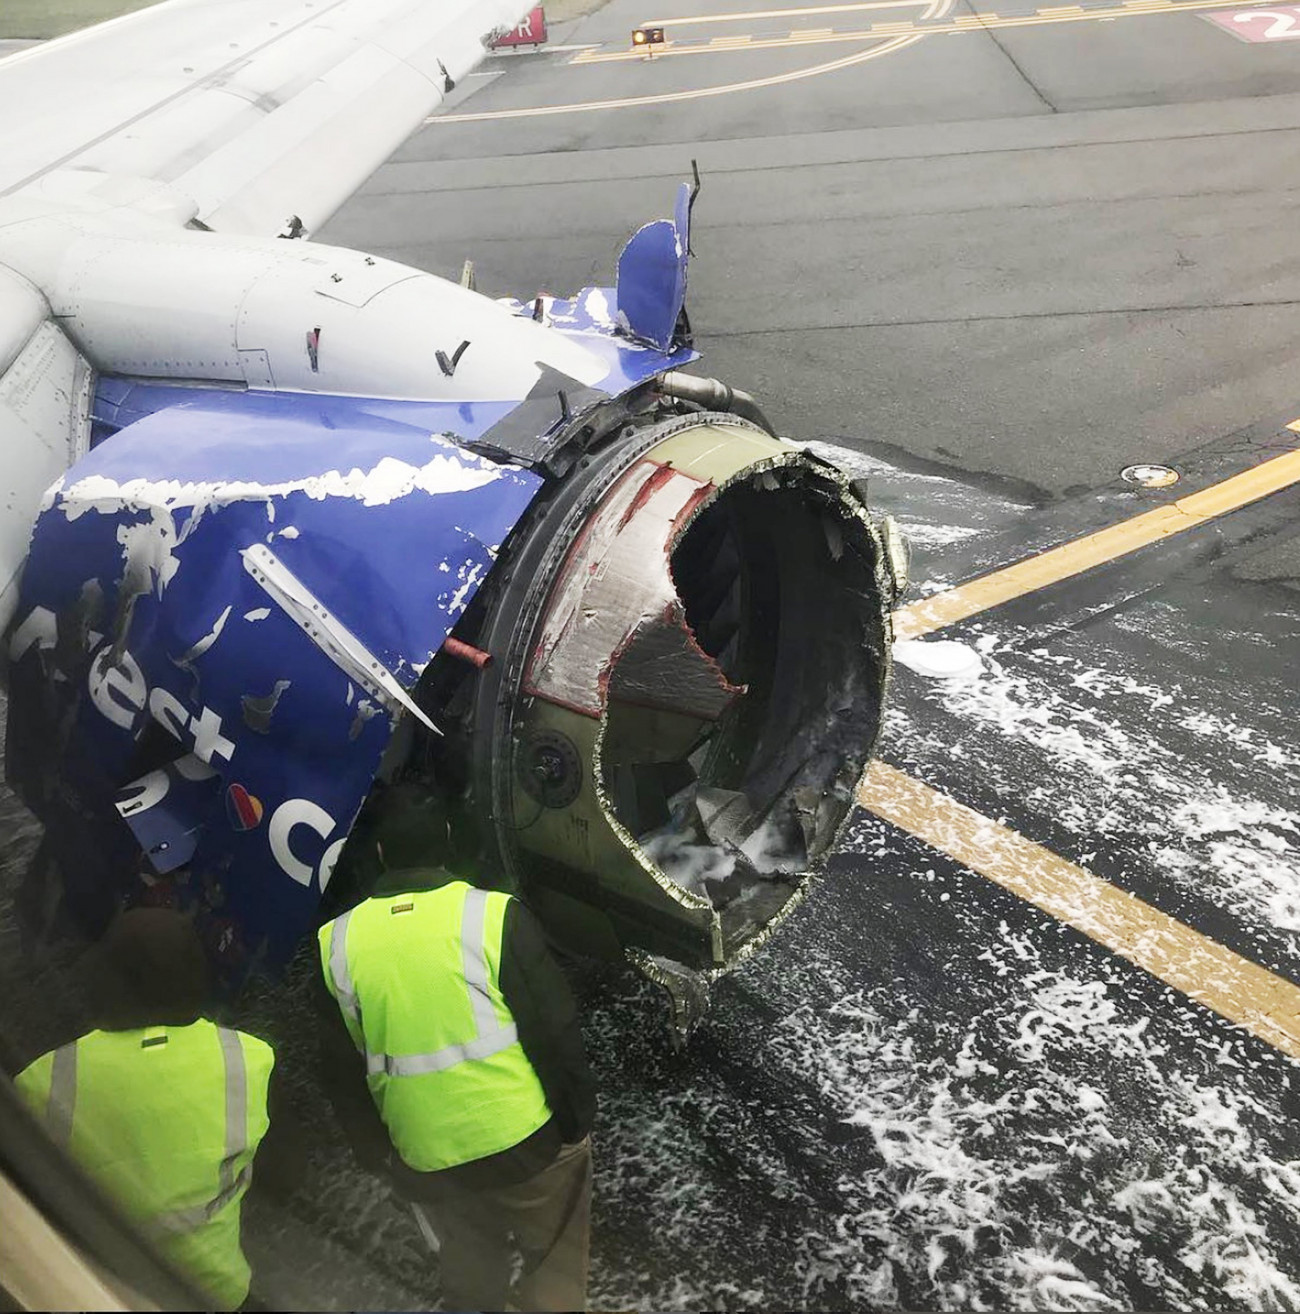 Philadelphia, 2018. április 18.
Az ABOURMAN nevű Instagram-felhasználó által közreadott képen szakértők vizsgálják a Southwest Airlines 1380-as járatának felrobbant hajtóművét a Philadelphiai Repülőtéren 2018. április 17-én, miután a gép kényszerleszállást hajtott végre. A New Yorkból a dallasi Love Fieldbe tartó járat hajtóműve repülés közben robbant fel, a gép ablakai betörtek, a balesetben egy ember életét vesztette. (MTI/EPA/Amanda Bourman)